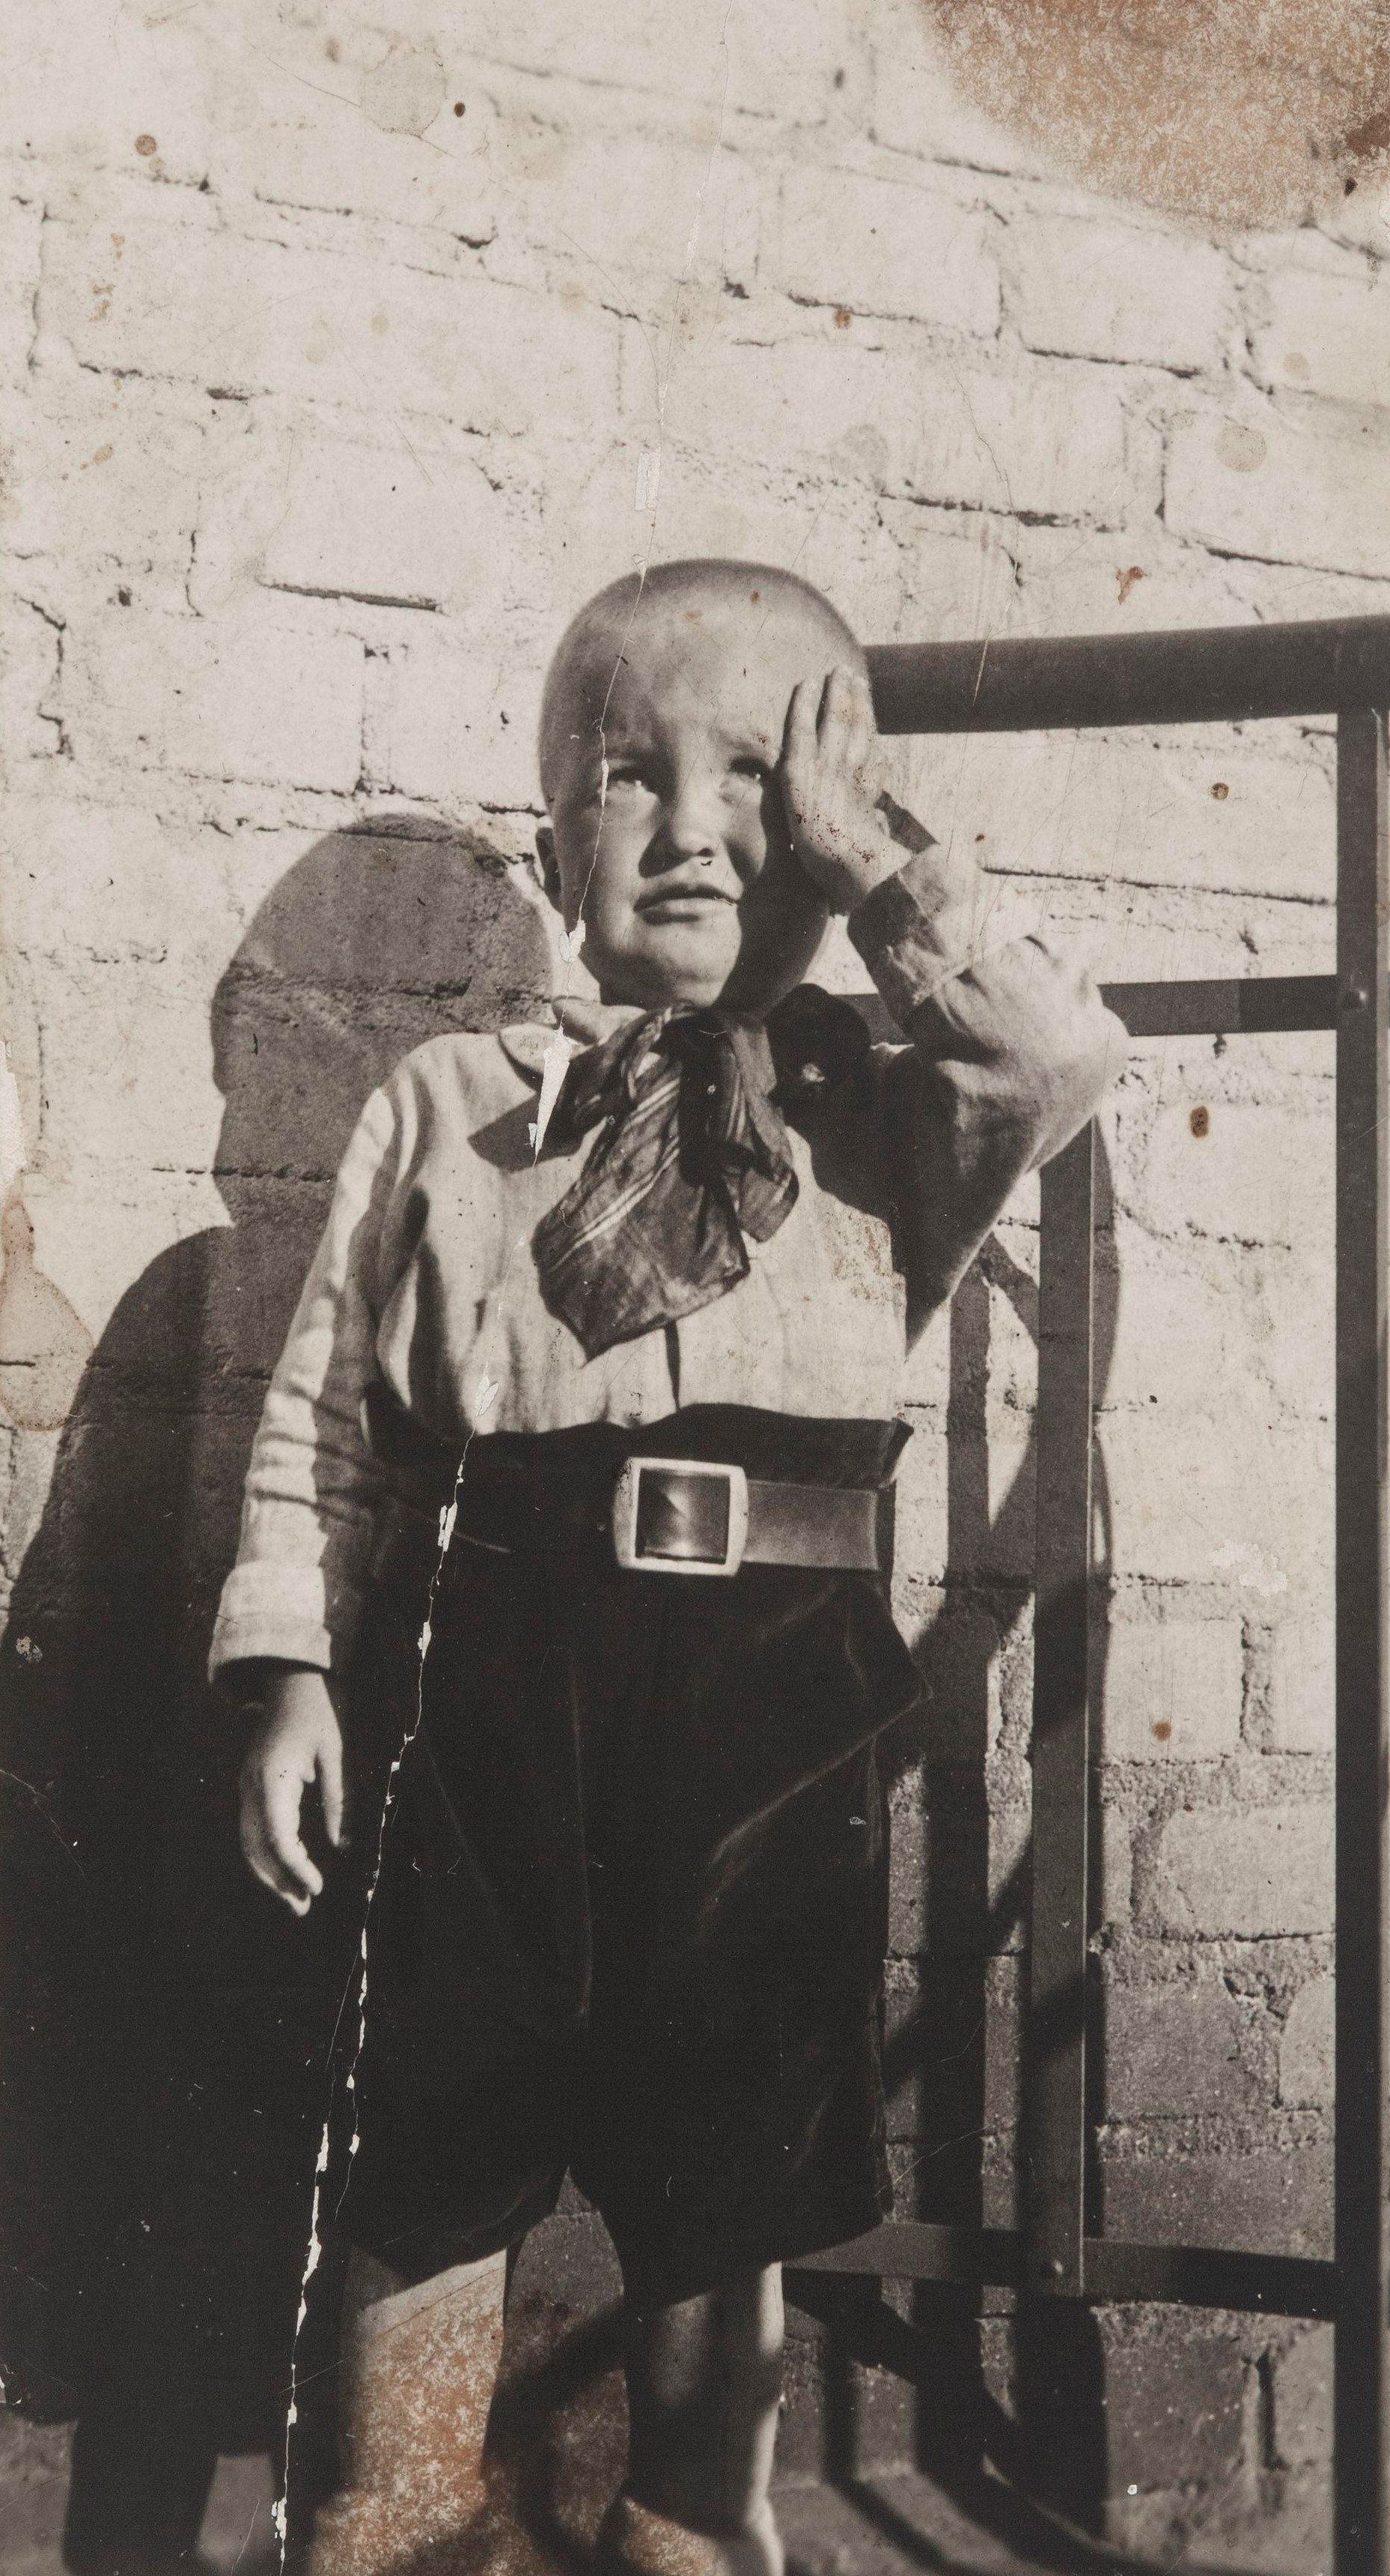 Pieni poika seisomassa tiiliseinän edustalla. Kuvassa todennäköisesti Pentti Niemelä, joka tuli vanhempiensa Leo ja Saara Niemelän kanssa Neuvosto-Karjalaan 1930-luvun alussa. Pentti menehtyi lapsena Nevdubstroilla, jossa hänen vanhempansa olivat töissä rakennustyömaalla. SKS KRA, Niemelä-perheen arkisto. CC BY-NC-ND 4.0